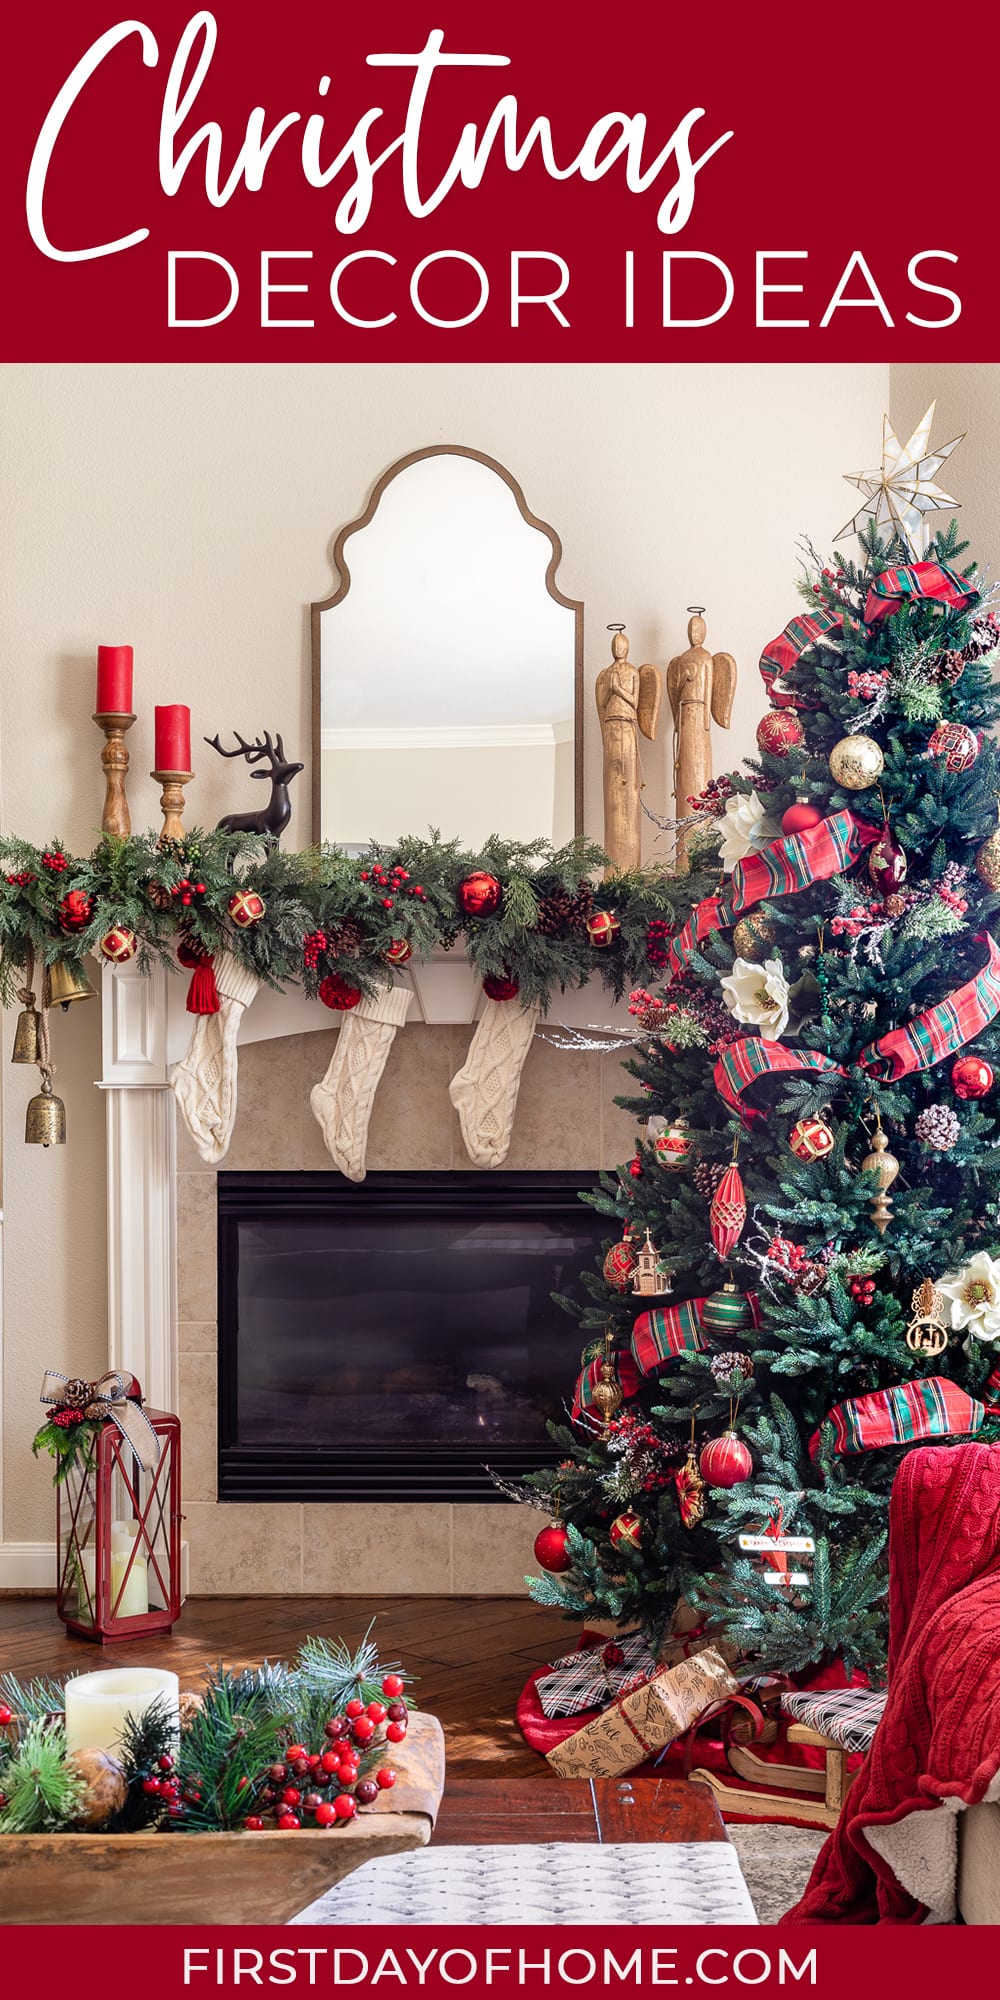 Christmas living room decor showing Christmas tree and mantel decor